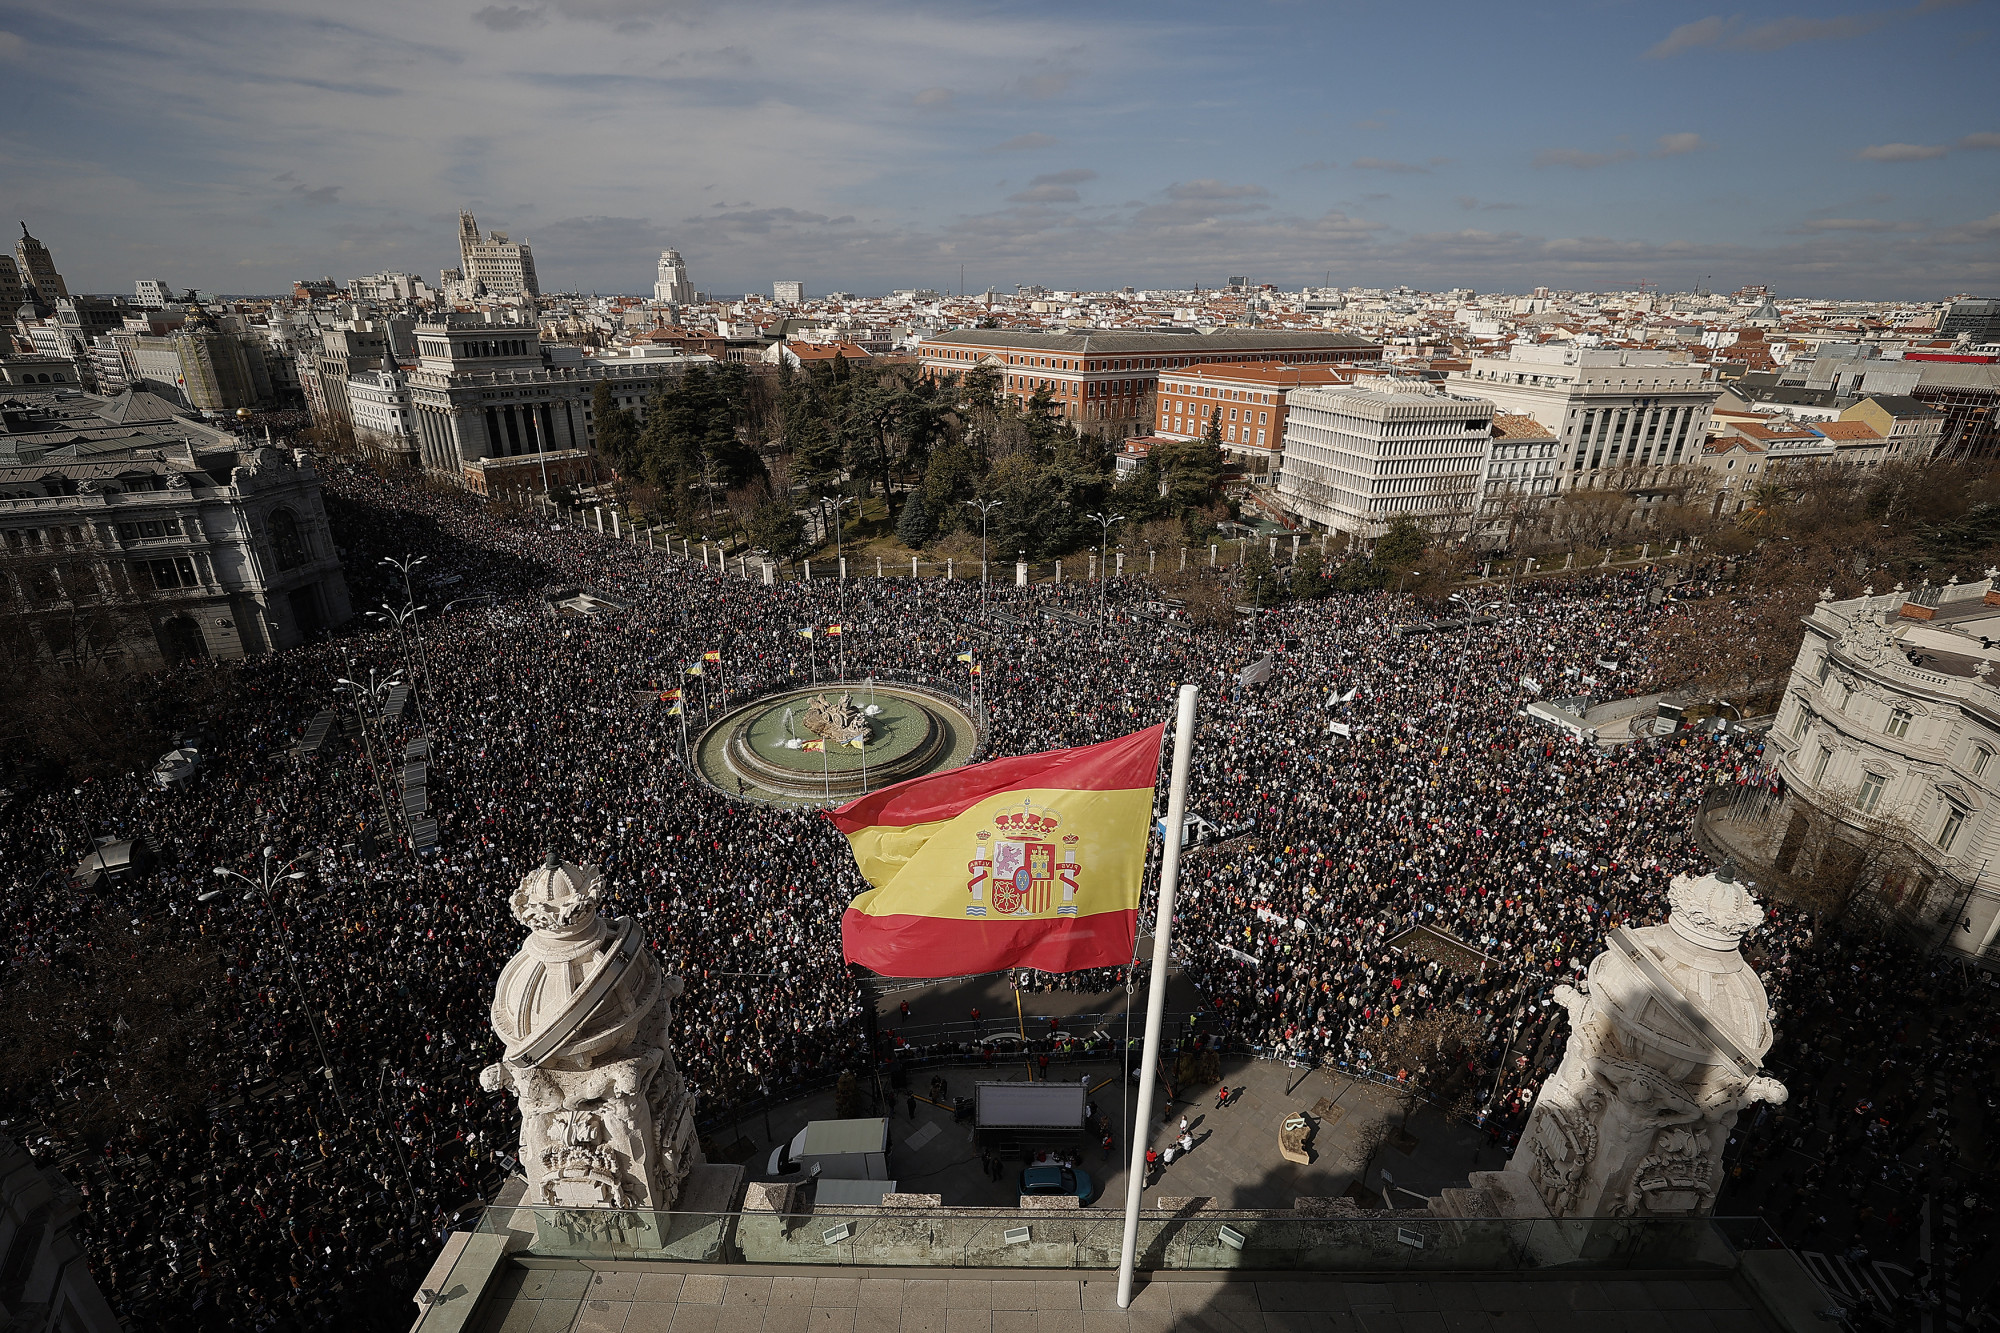 Tüntetők százezrei lepték el Madrid belvárosát, a Cibeles tér környékét vasárnap, hogy a helyi jobboldali vezetés egészségügyi politikája ellen tiltakozzanak.